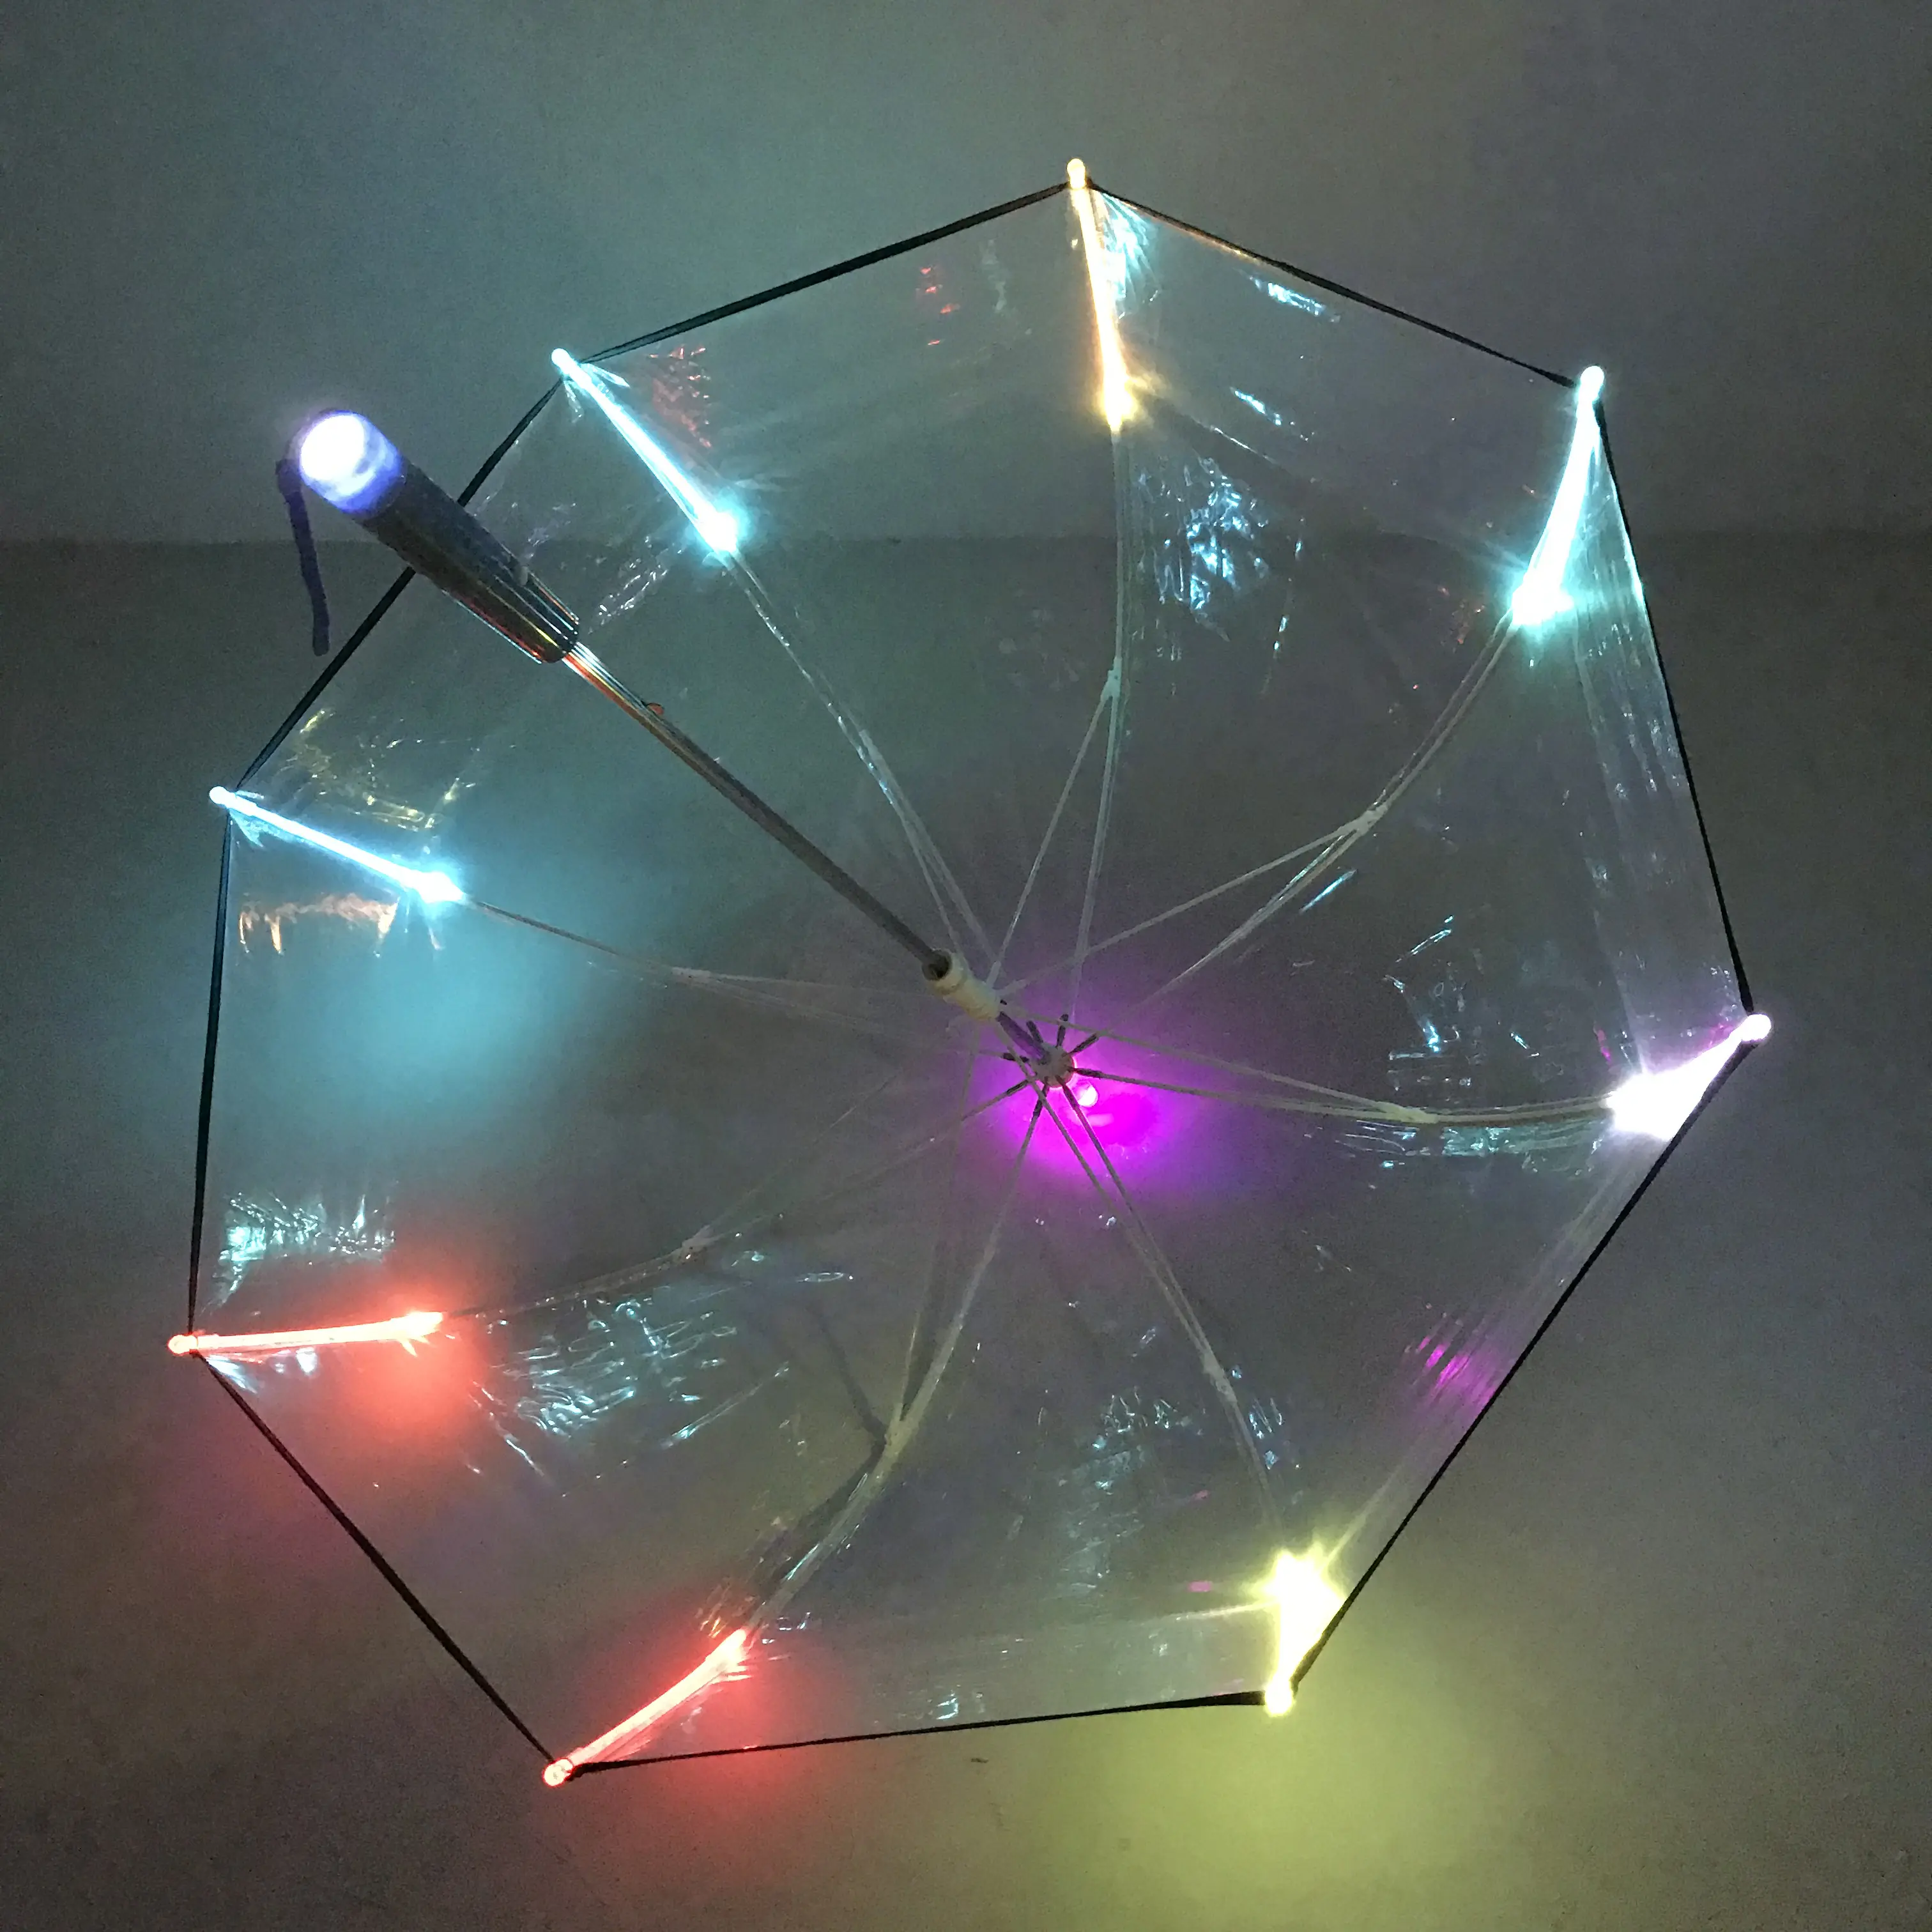 Payung Anak Lucu Transparan Antiair dengan Lampu Led